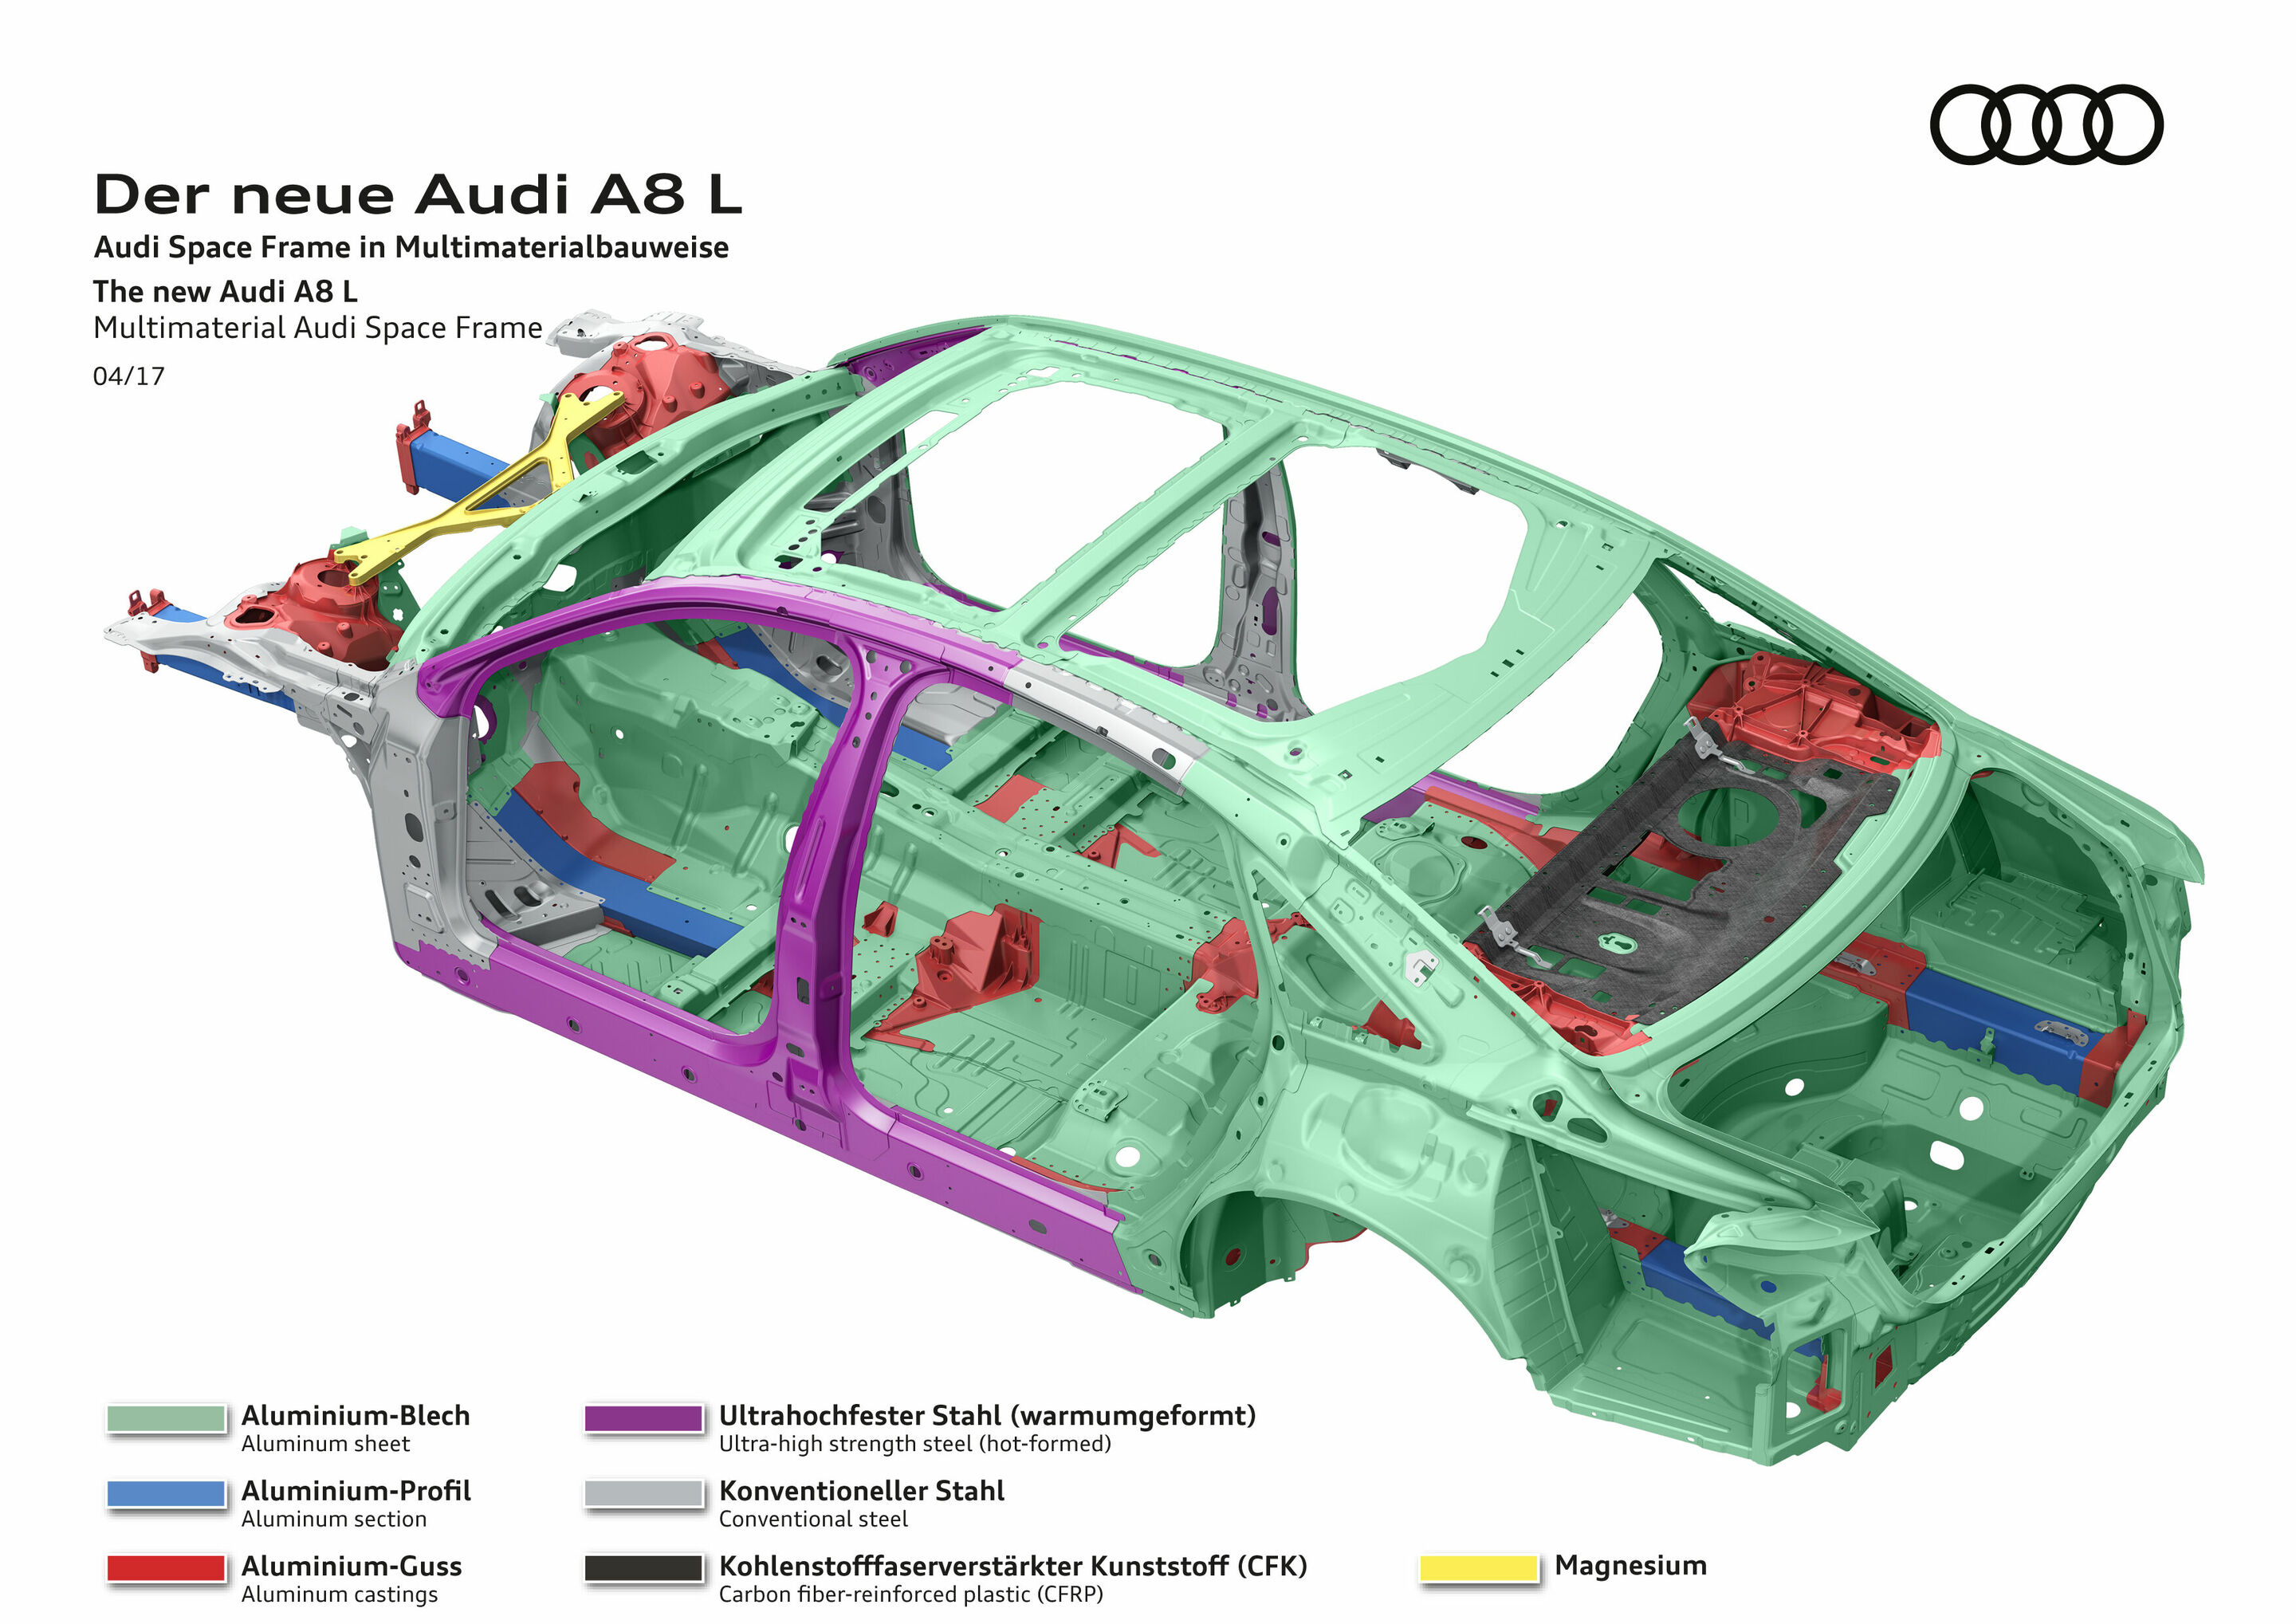 Der neue Audi A8 L